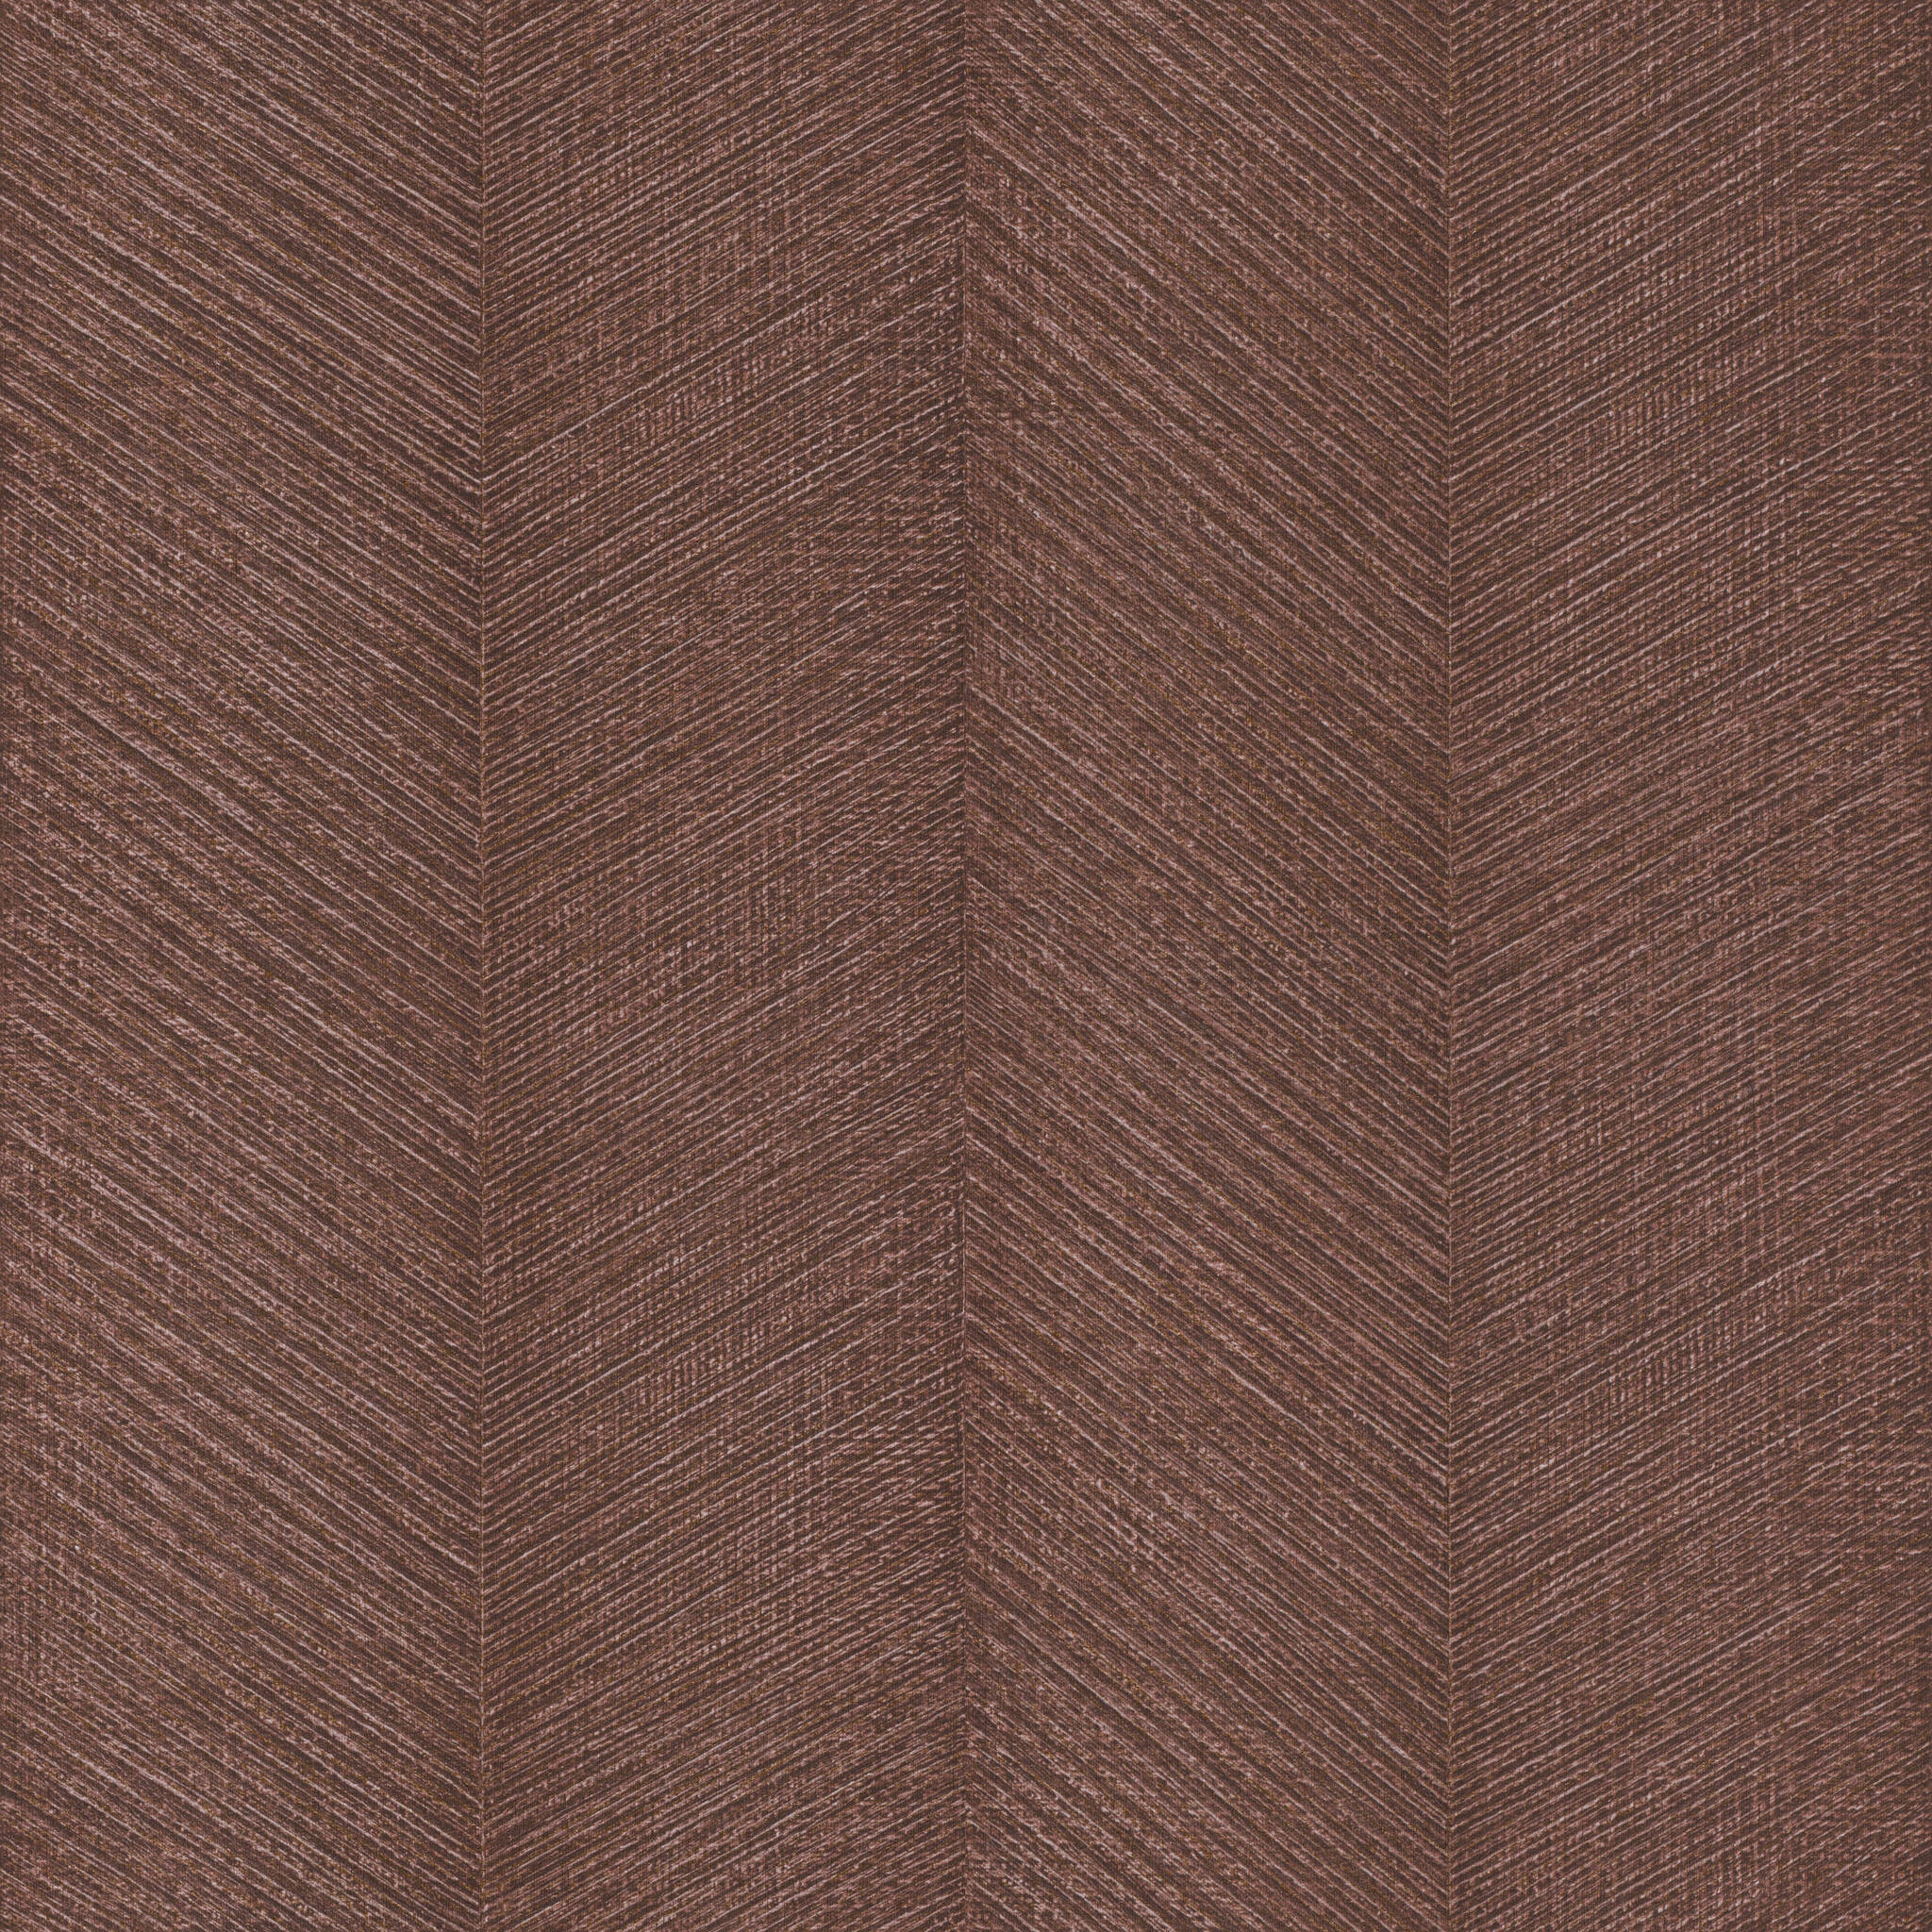 Diagonal Vliestapete in Braun-Messing dunkel Amara 720365